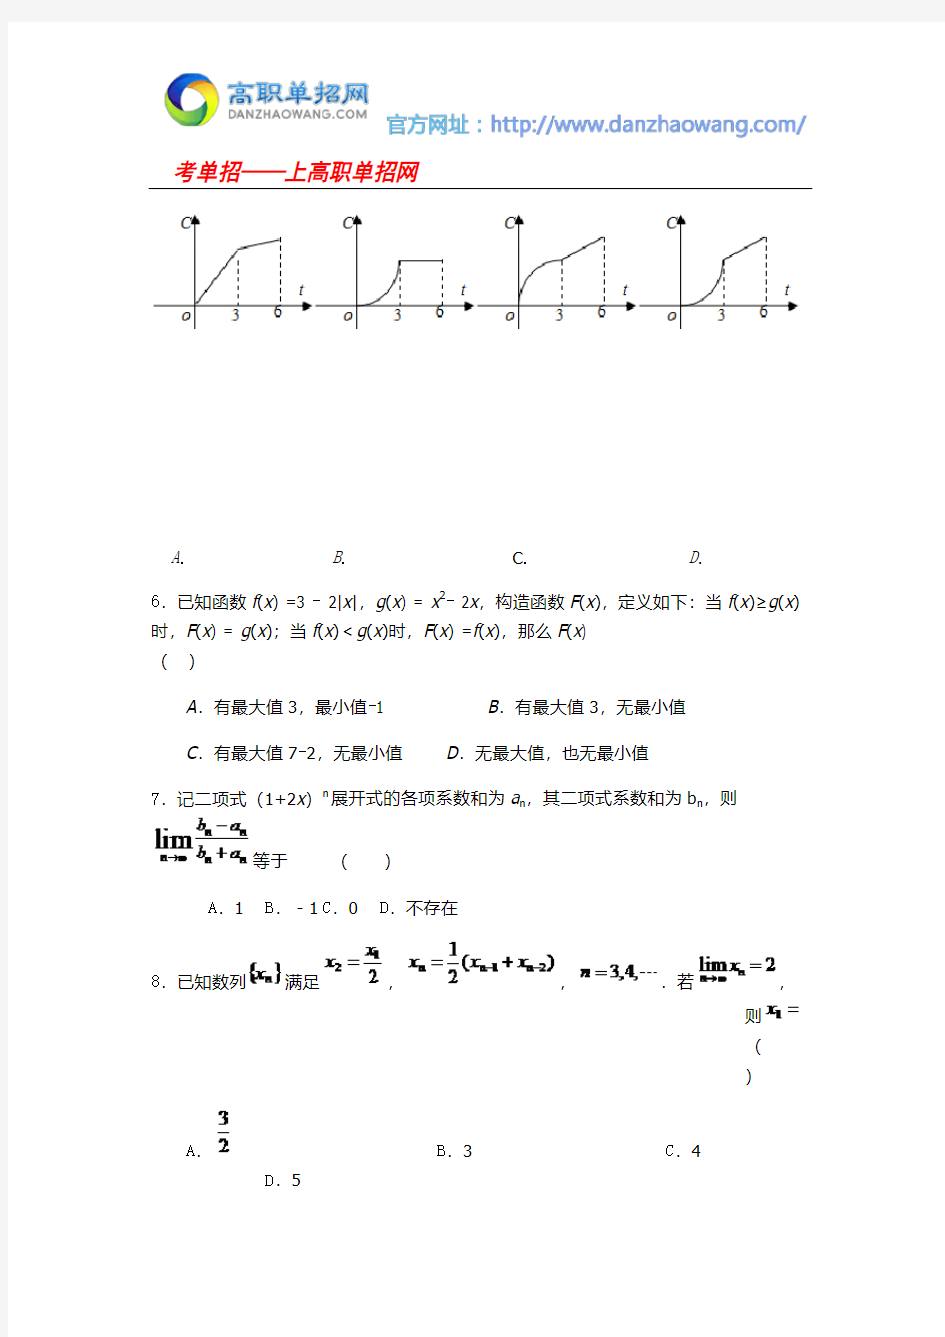 2016辽阳职业技术学院单招数学模拟试题(附答案解析)